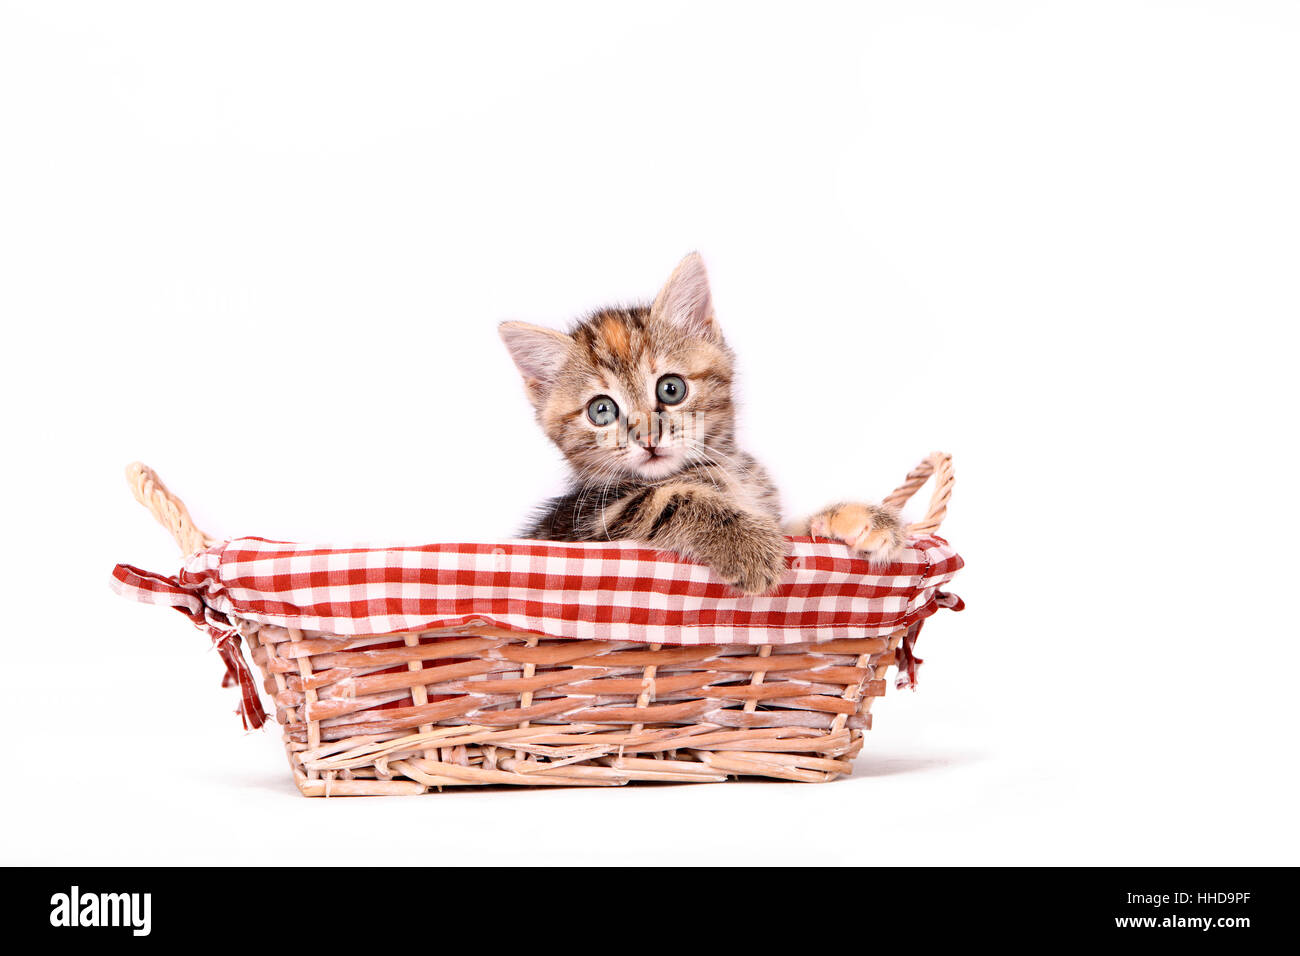 Europaeisch Kurzhaar. Kitten (6 weeks old) in a wicker basket. Studio picture against a white background Stock Photo